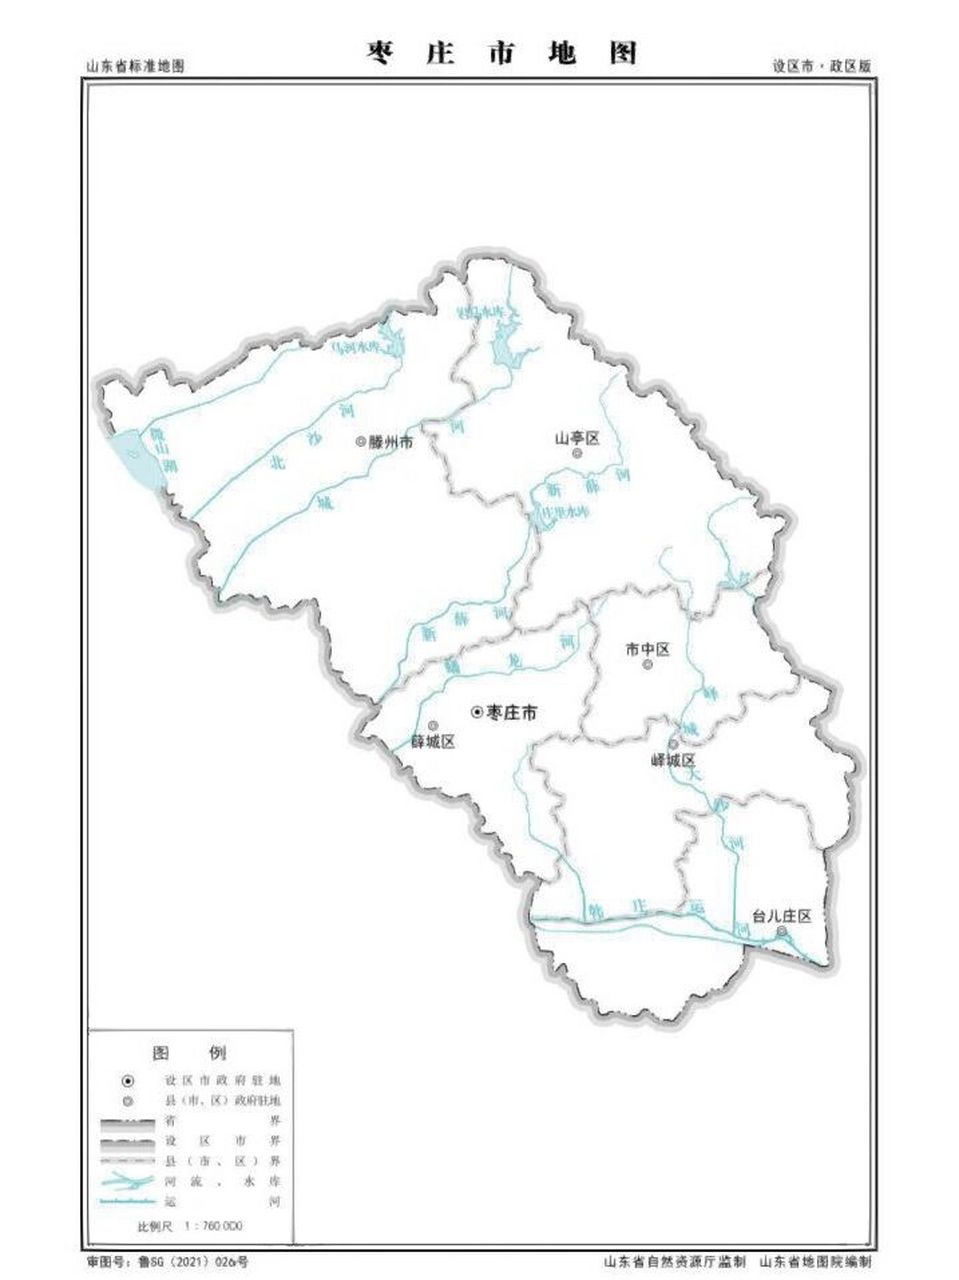 枣庄五区一市地图图片